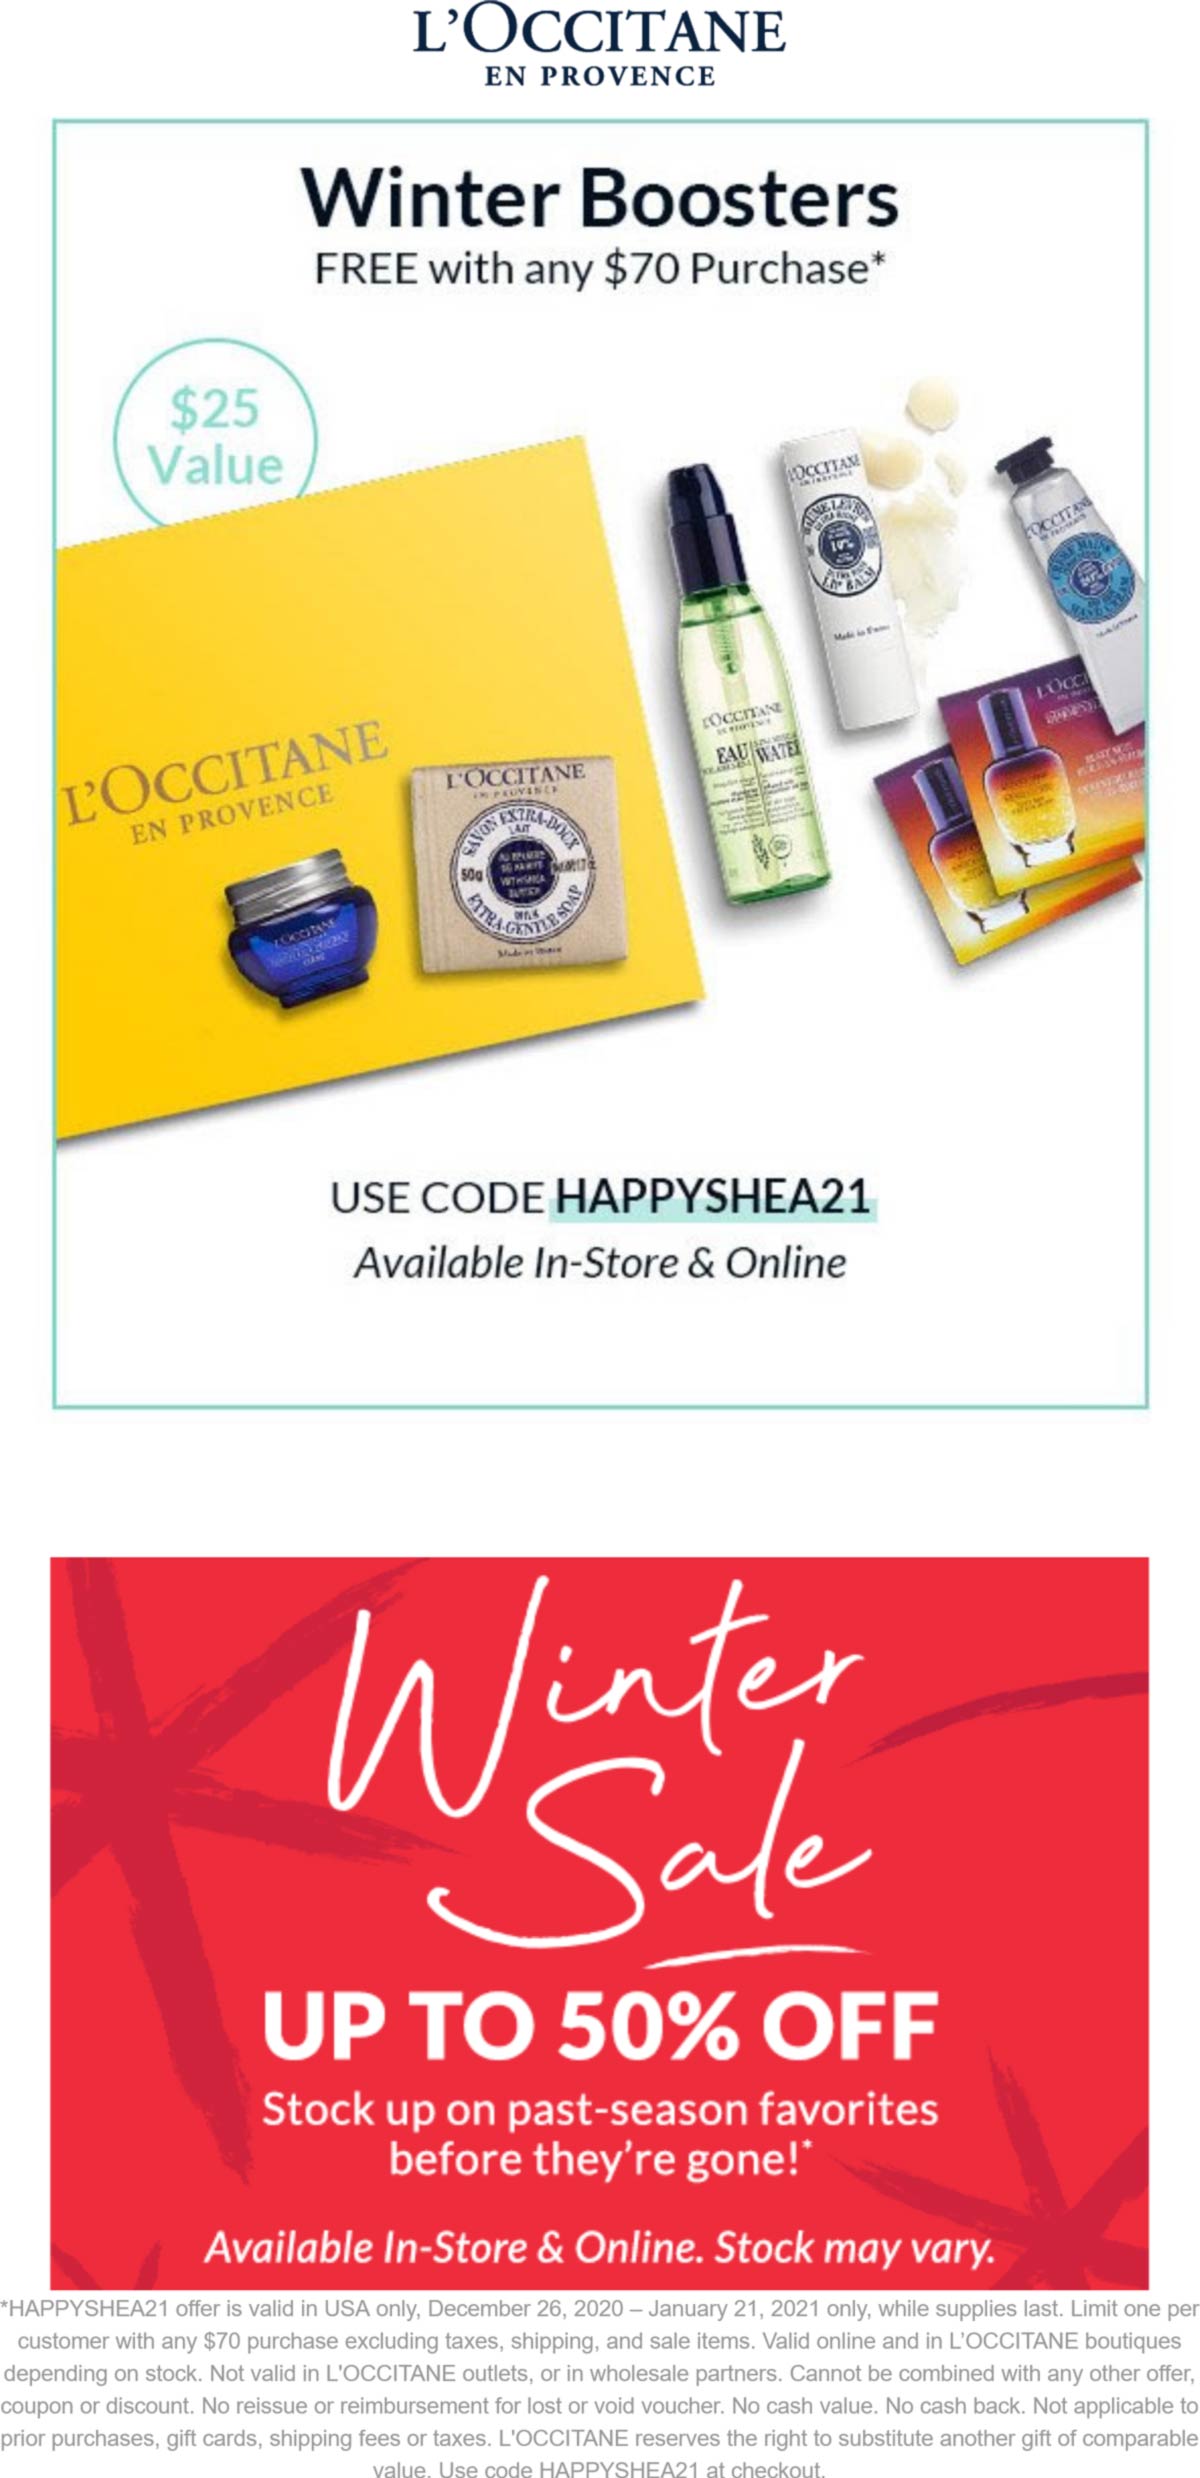 LOccitane stores Coupon  Free 7pc kit with $70 spent at LOccitane via promo code HAPPYSHEA21 #loccitane 